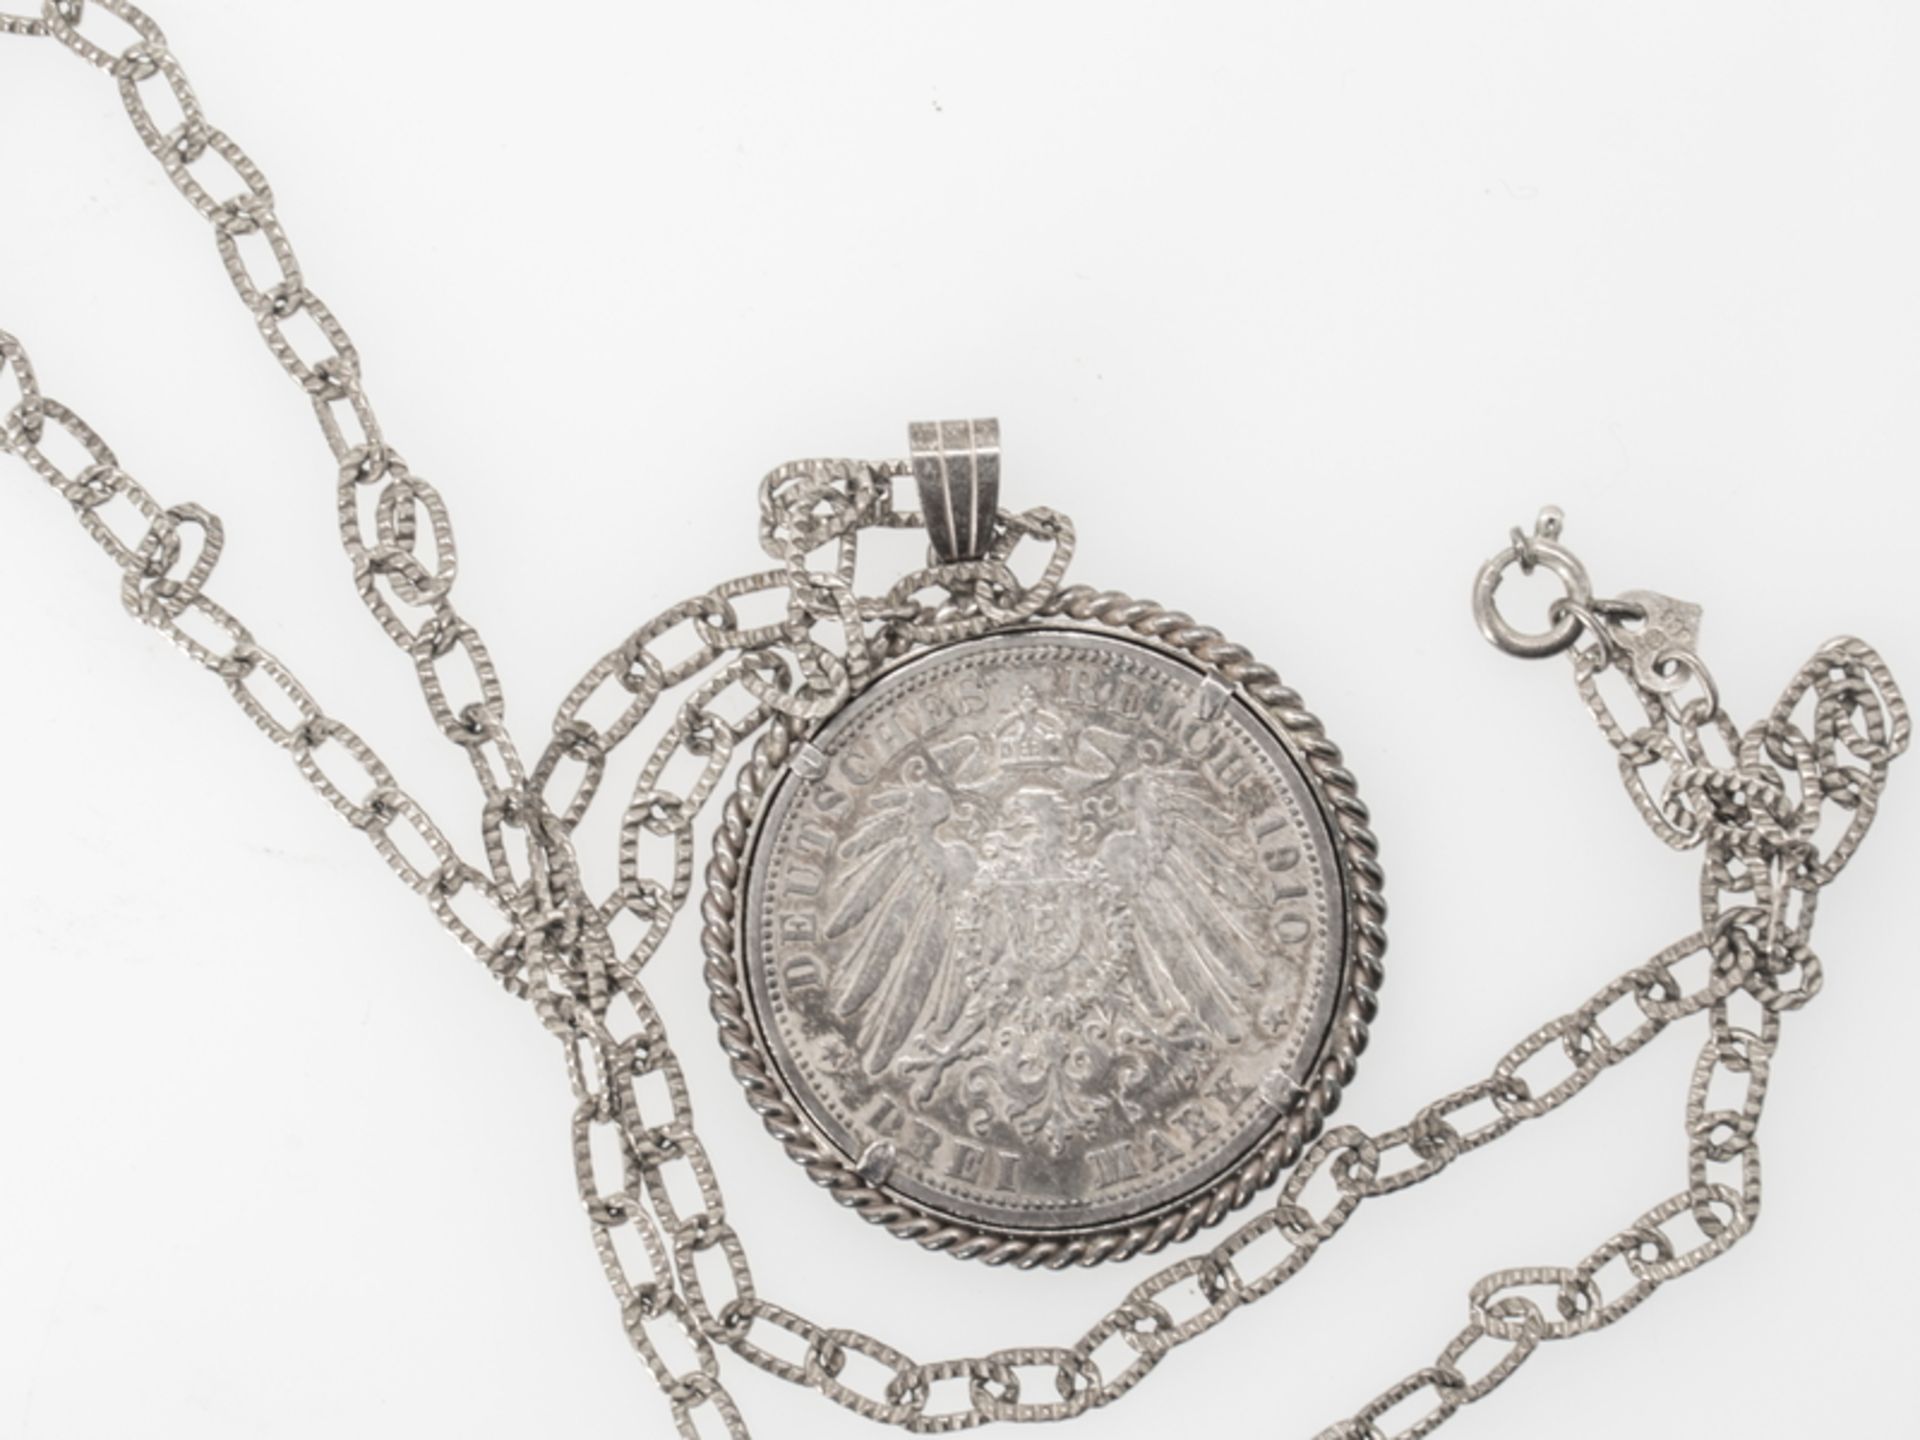 Deutsches Kaiserreich Baden 1910, 3 .- Mark - Silbermünze als Anhänger gefasst an Silberkette. - Bild 2 aus 2